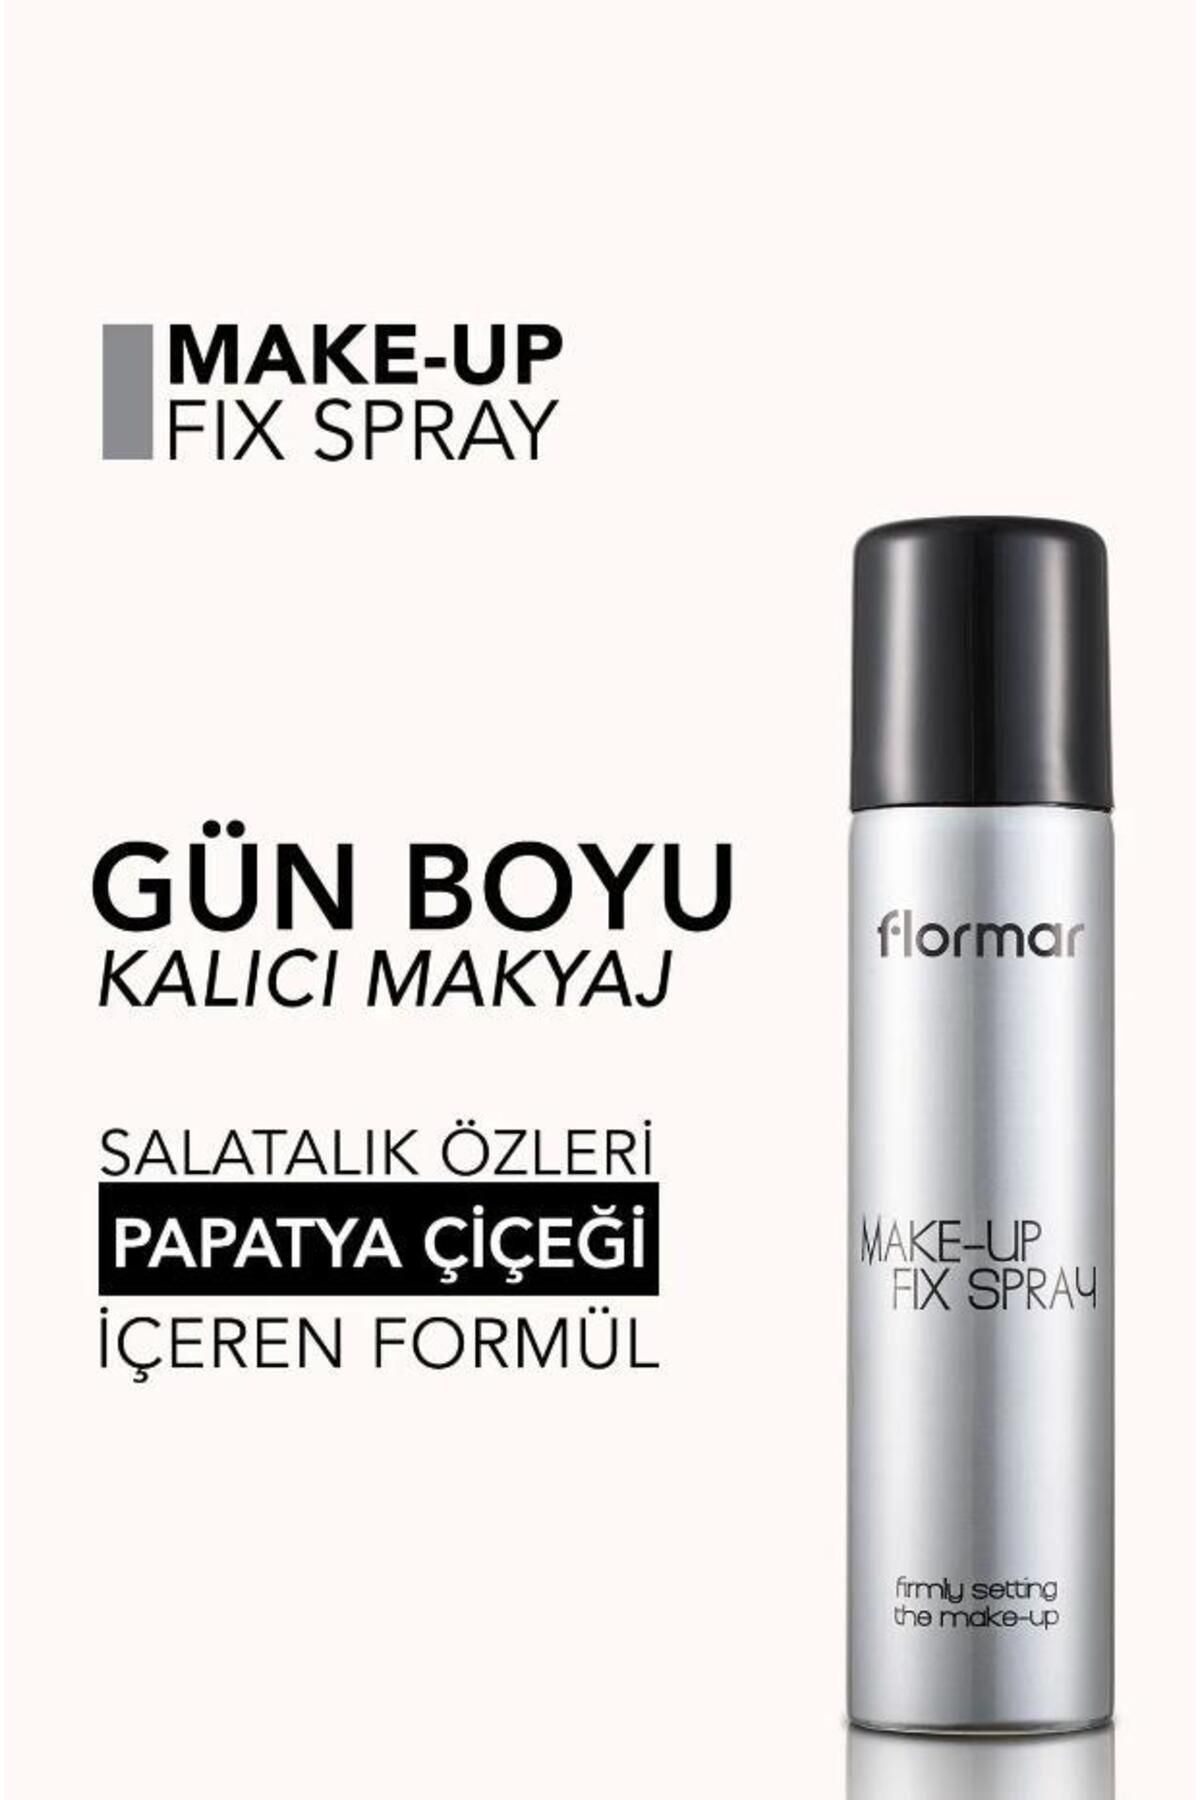 Flormar Nemlendirici Makyaj Sabitleme Spreyi Make-Up Fix Spray